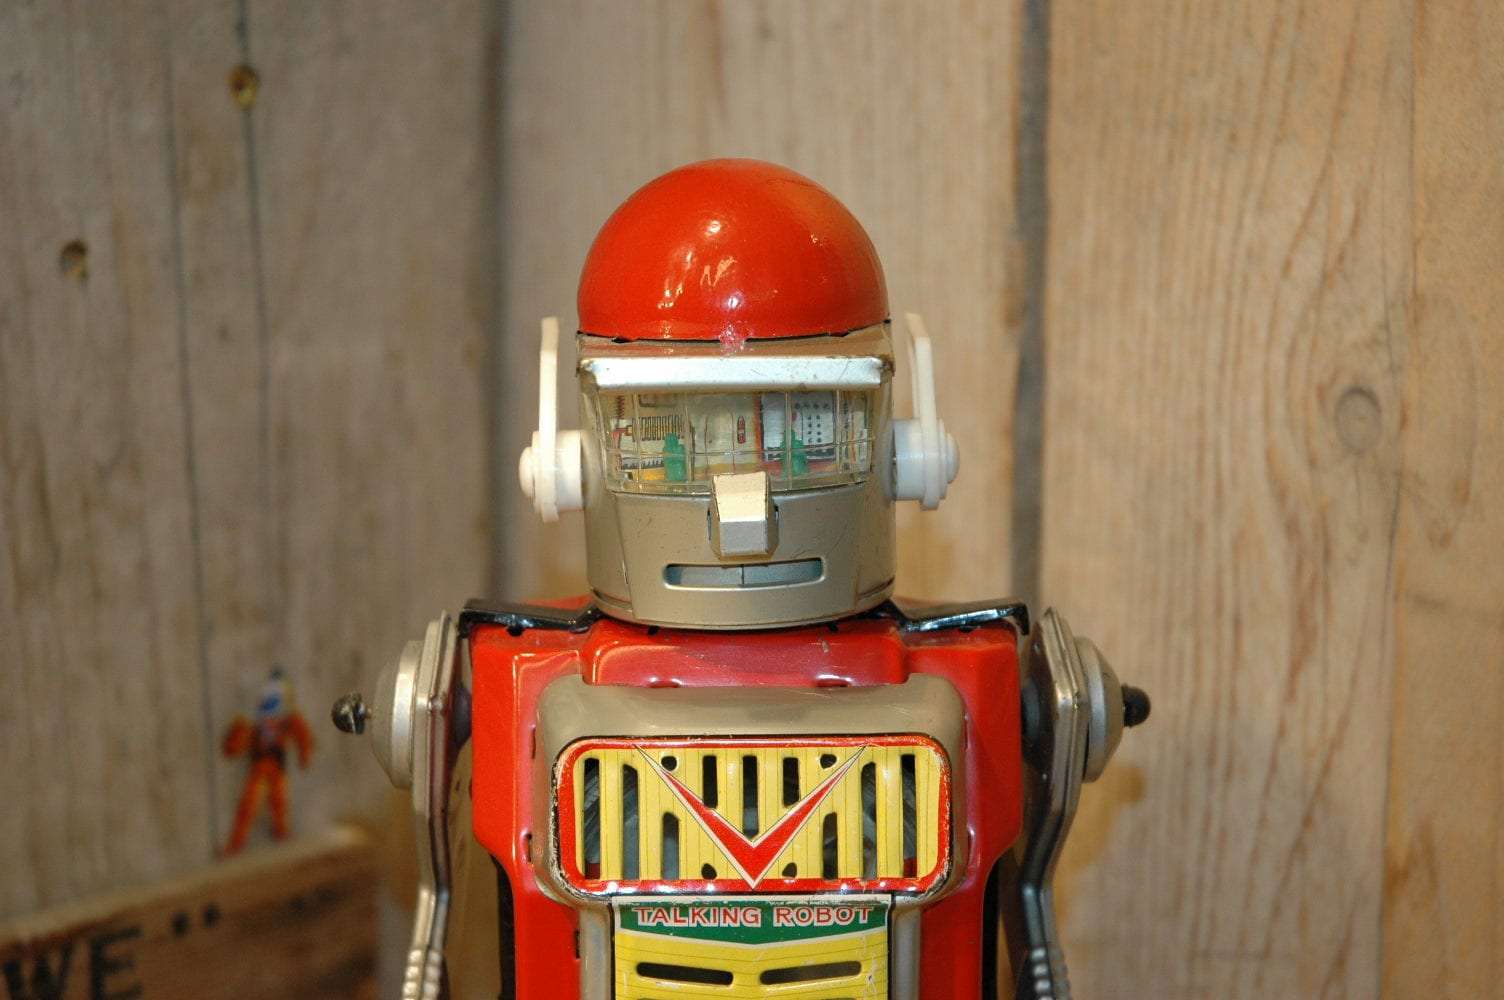 Yonezawa - Japanese Talking Robot